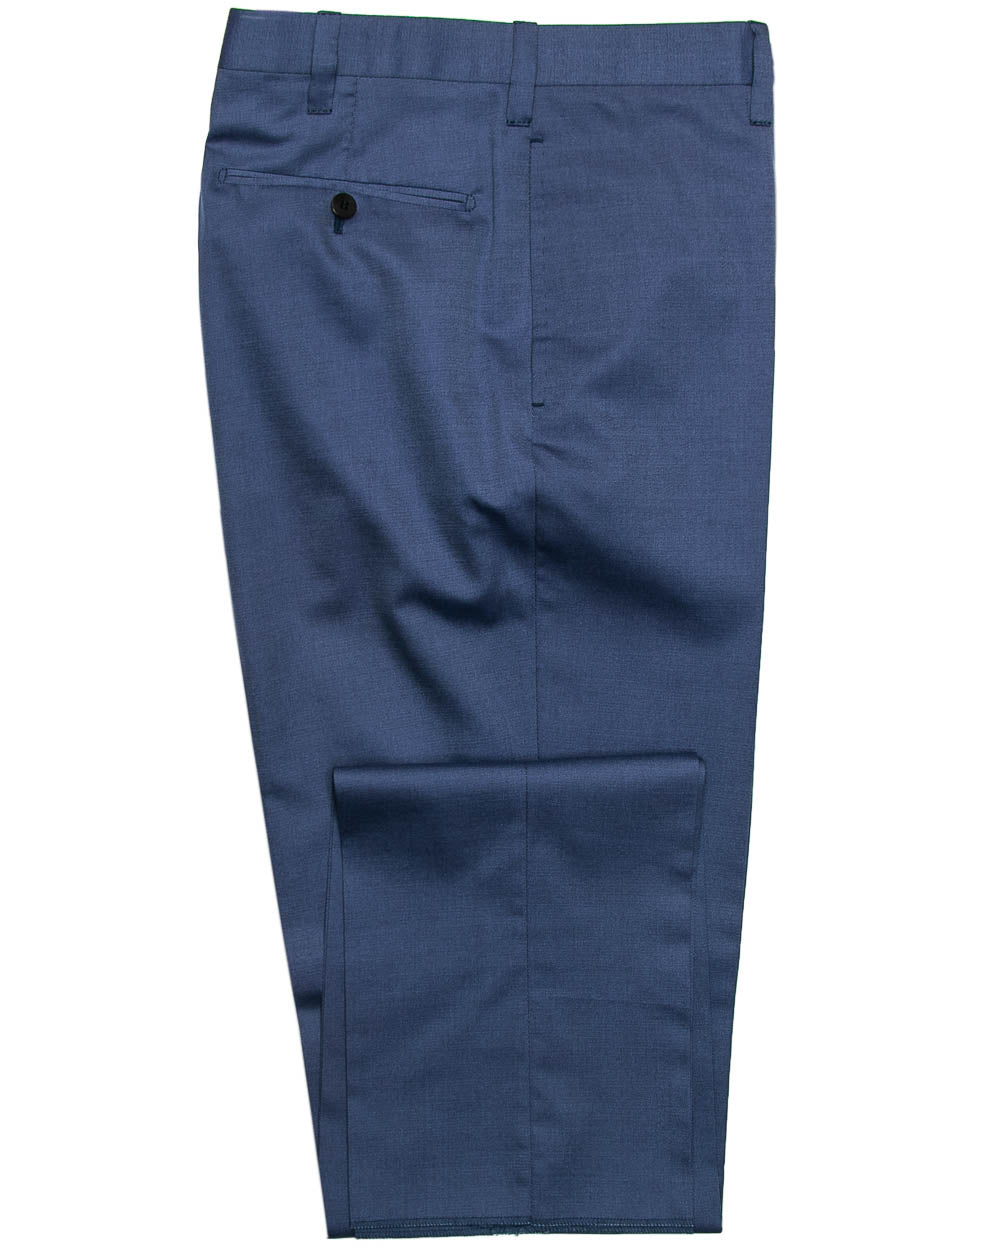 Dark Blue Twill Dress Pant